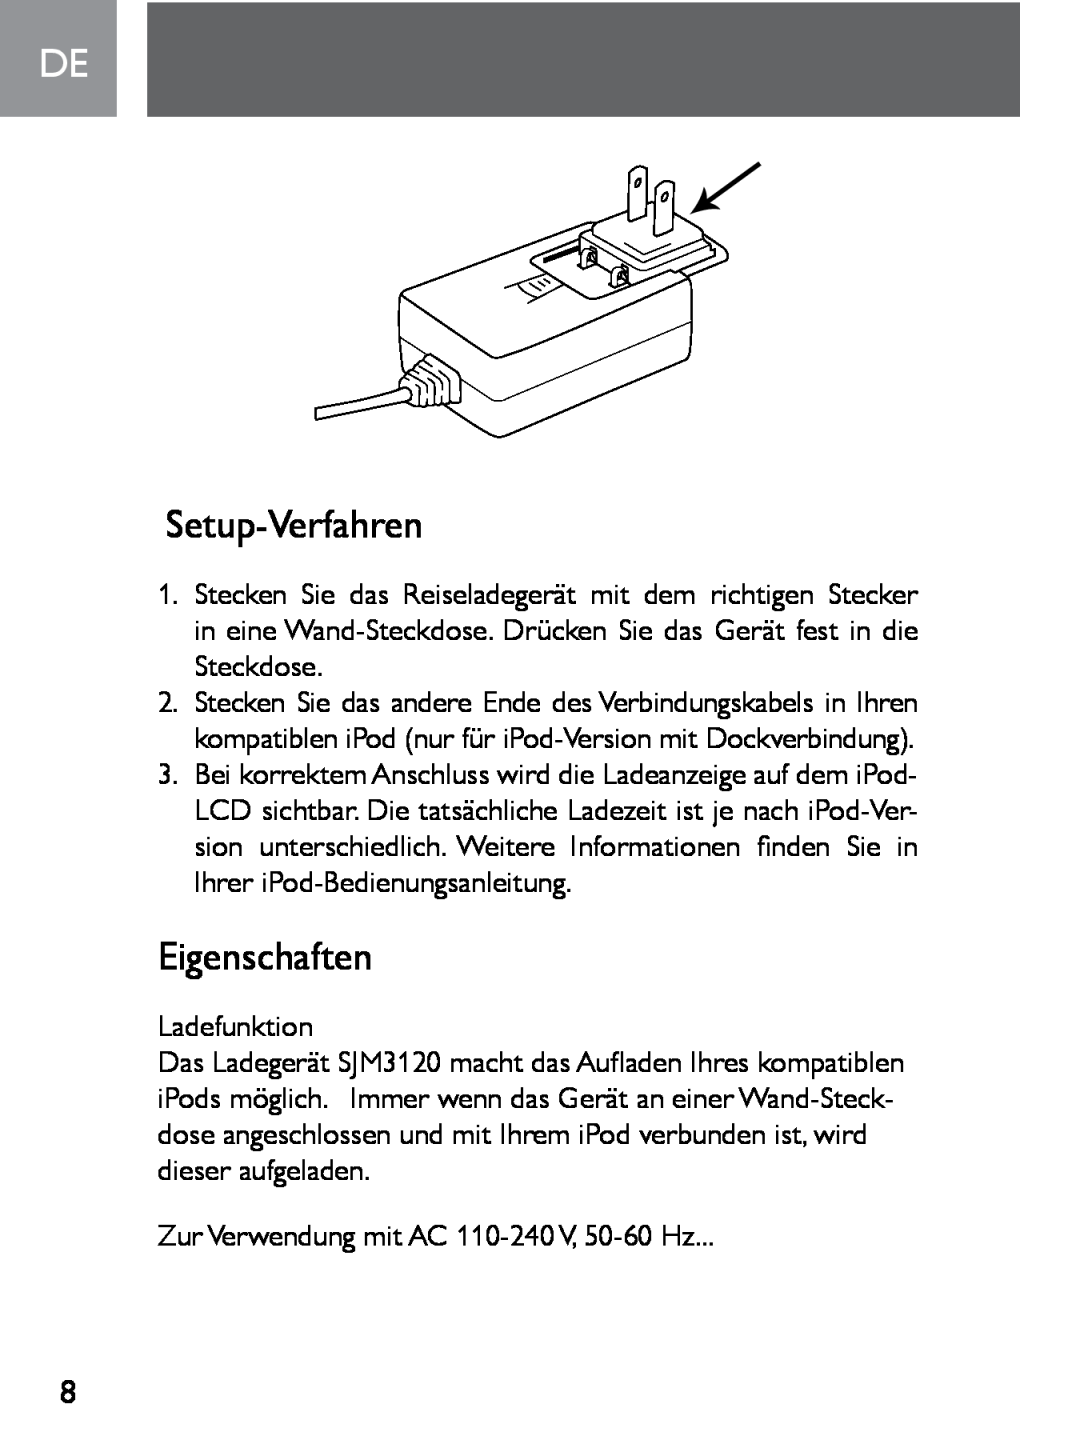 Philips SJM3120 user manual Setup-Verfahren, Eigenschaften 